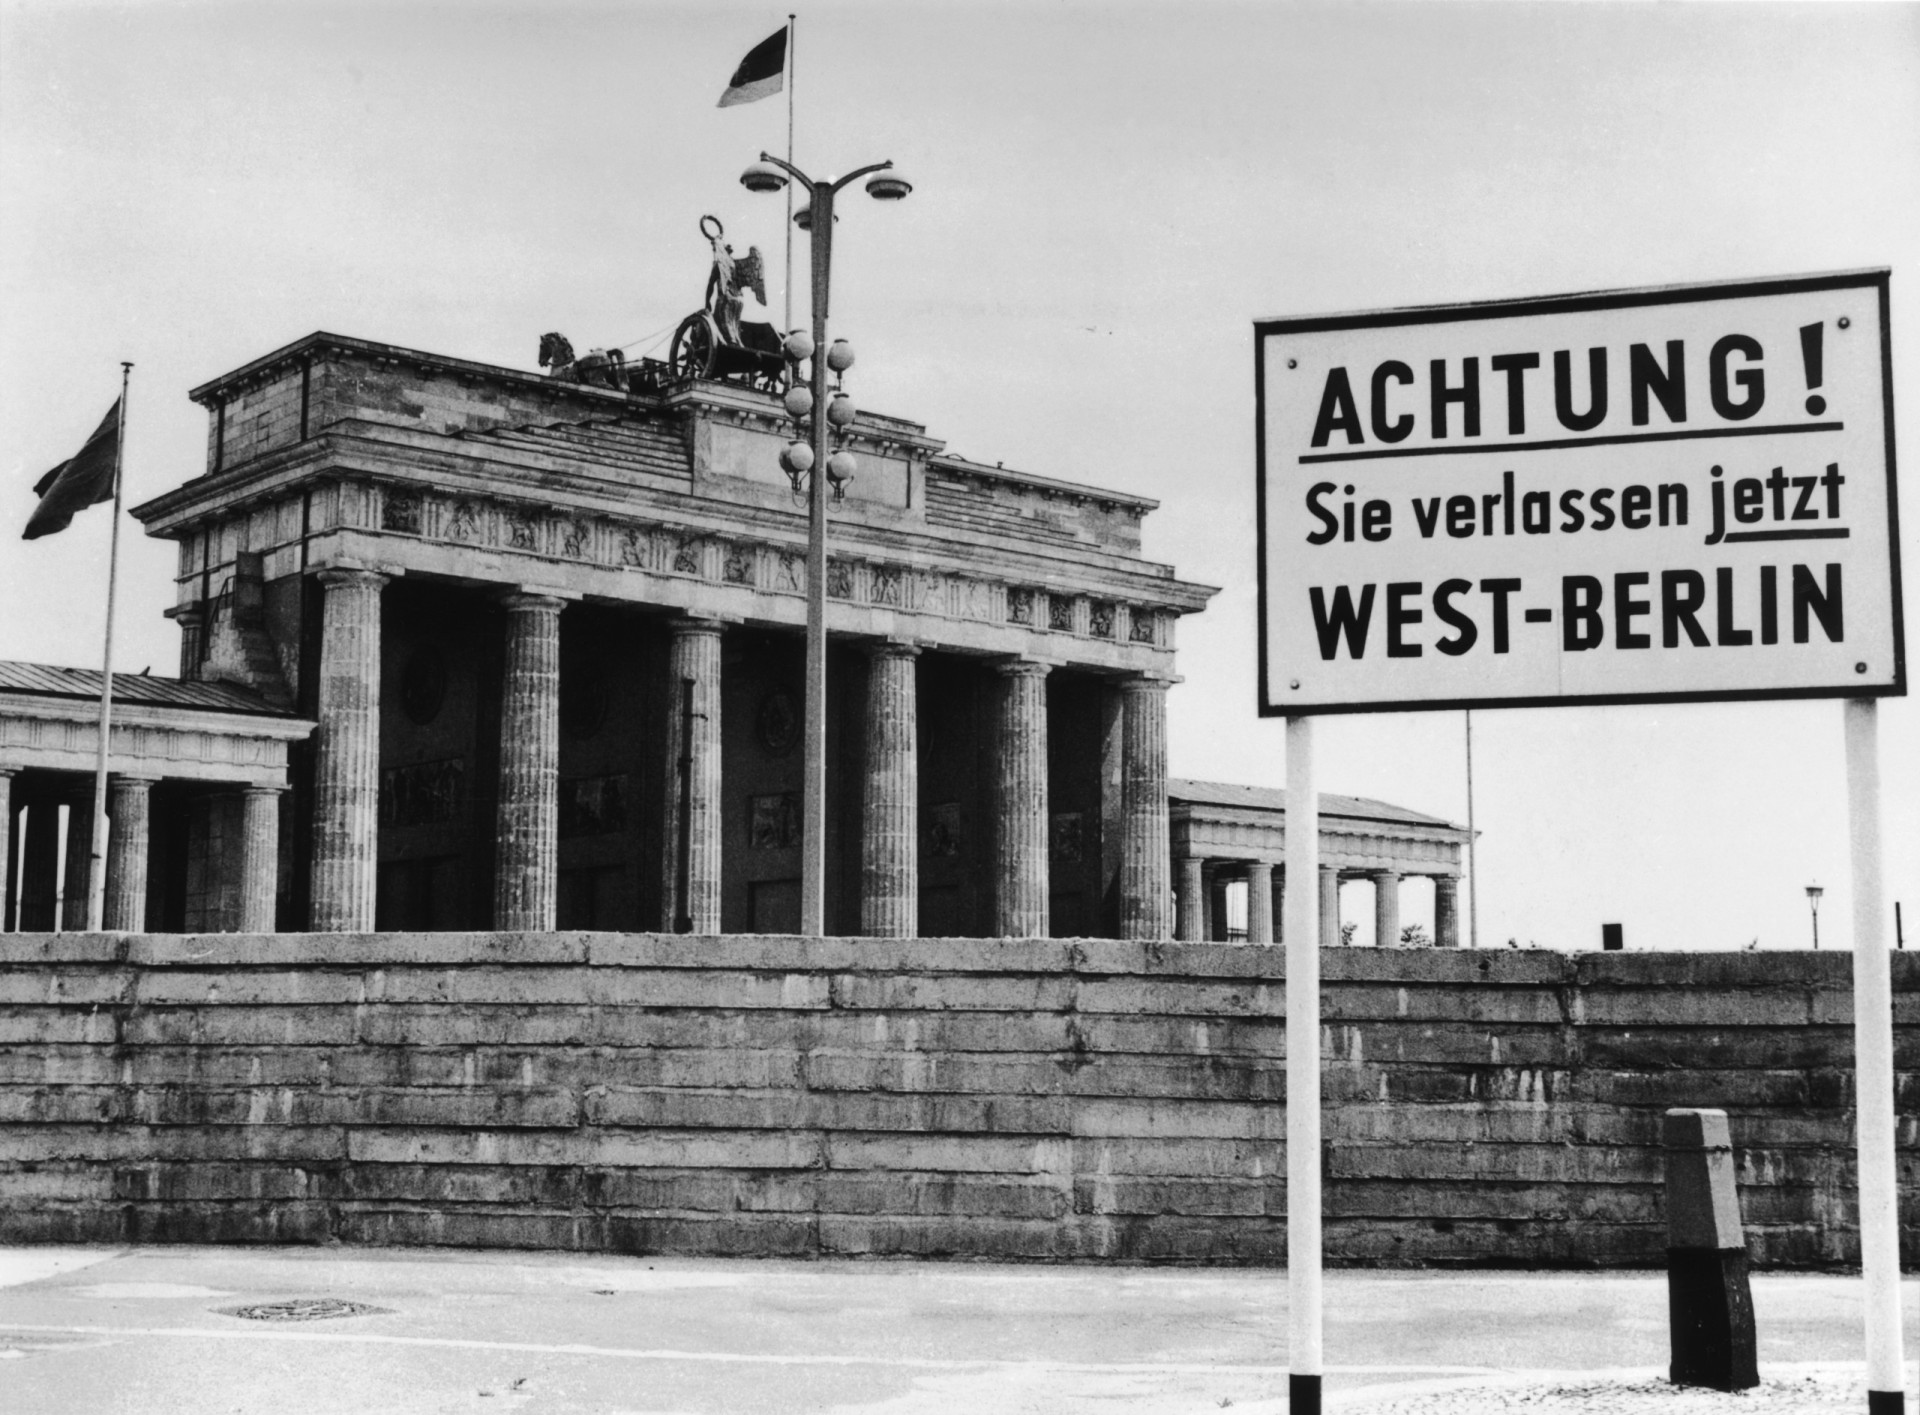 <p>Die Berliner Mauer wurde auf Anweisung des ostdeutschen kommunistischen Politikers Erich Honecker errichtet, um die Massenauswanderung der Deutschen von Ost- nach West-Berlin zu verhindern. Sie war eine schwer bewachte Barriere, die die Stadt von 1961 bis 1989 physisch und ideologisch teilte. In einem größeren Zusammenhang wurde die Mauer zum Symbol für den "Eisernen Vorhang", der Westeuropa und den Ostblock während des Kalten Krieges trennte. Sie wurde in nur zwei Wochen errichtet, zunächst als behelfsmäßige Mauer aus Stacheldraht und Betonblöcken. Doch schon bald wurde sie verstärkt und zu einem tödlichen Hindernis für alle, die im Westen nach Freiheit suchten.</p> <p>Klicken Sie sich durch diese Galerie und lassen Sie sich daran erinnern, wie schnell die <a href="https://de.starsinsider.com/lifestyle/433166/erinnerungen-an-die-berlin-blockade" rel="noopener">Berliner</a> Mauer gebaut wurde und wie sie eine ganze Stadt in zwei Hälften teilte.</p><p>Sie können auch mögen:<a href="https://de.starsinsider.com/n/224957?utm_source=msn.com&utm_medium=display&utm_campaign=referral_description&utm_content=564766"> Technisches Versagen mit fatalen Folgen: Diese Katastrophen schrieben Geschichte</a></p>